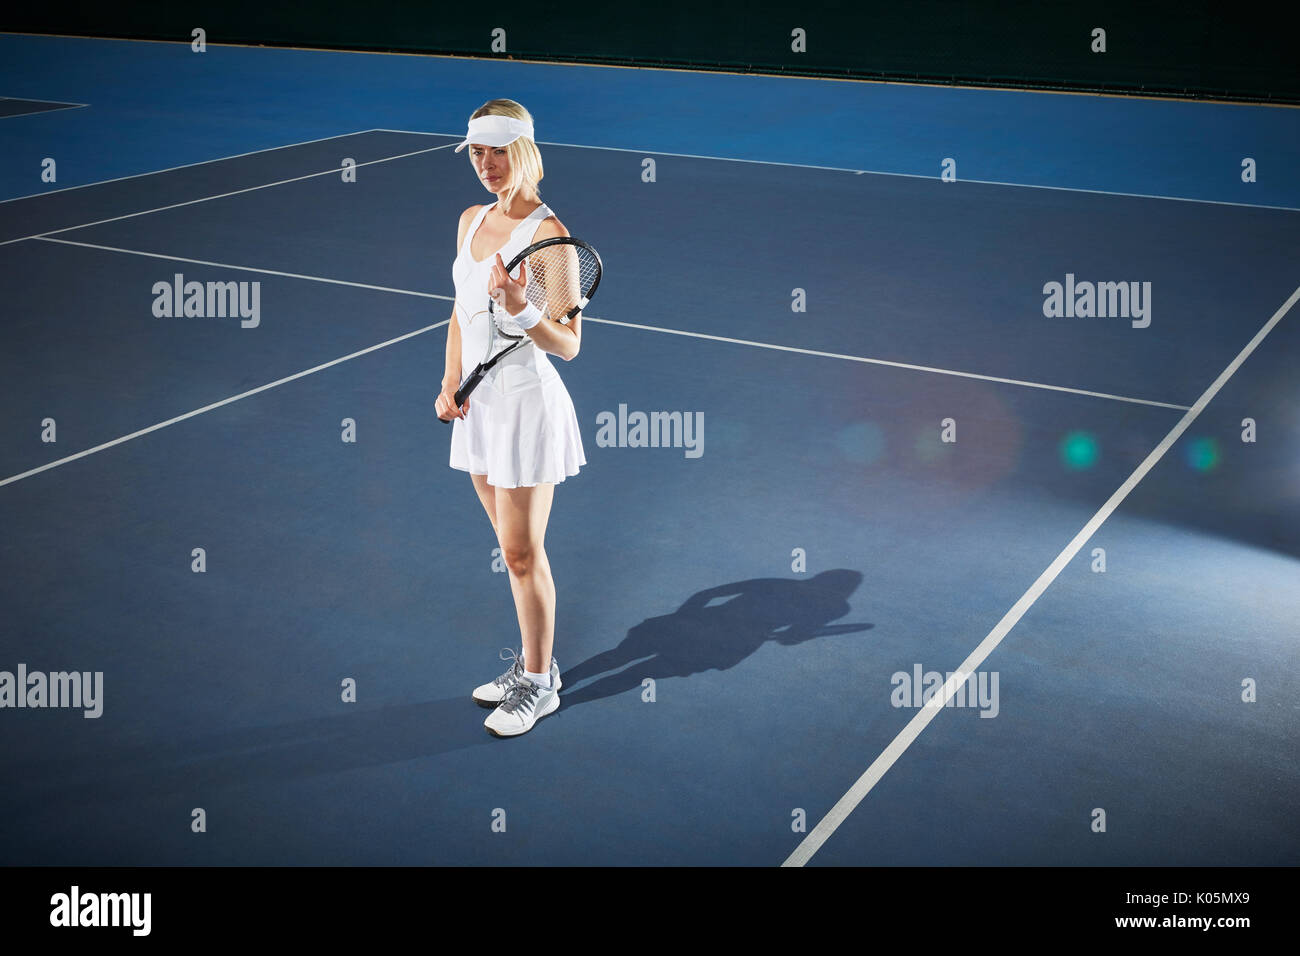 Junge weibliche Tennisspieler holding Tennisschläger auf sonnigen blauen Tennisplatz Stockfoto